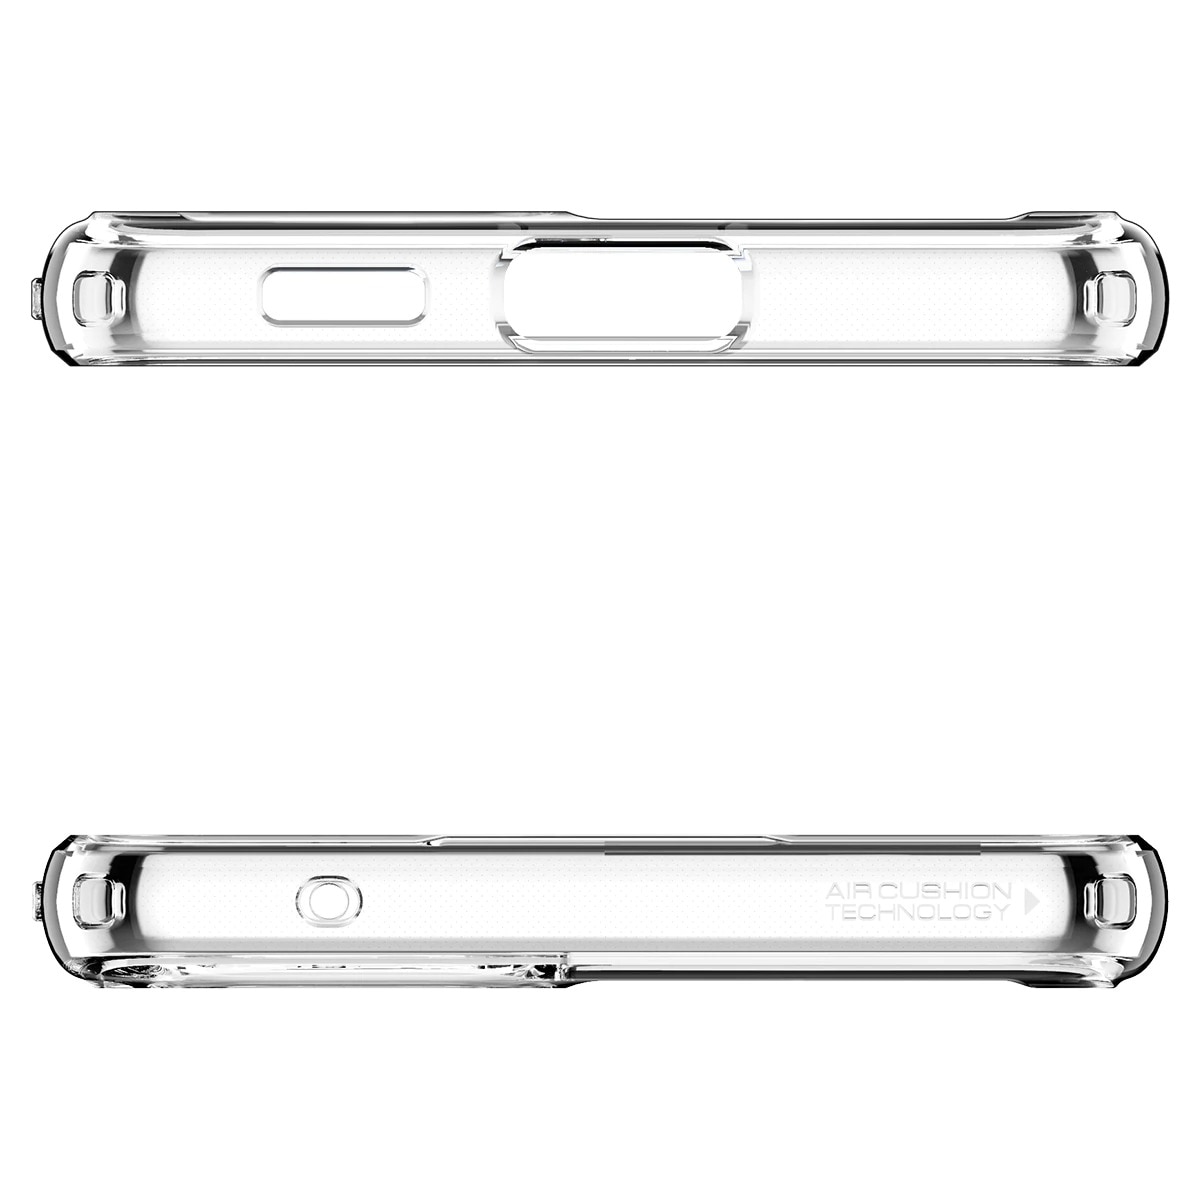 Samsung Galaxy A53 Case Ultra Hybrid Crystal Clear